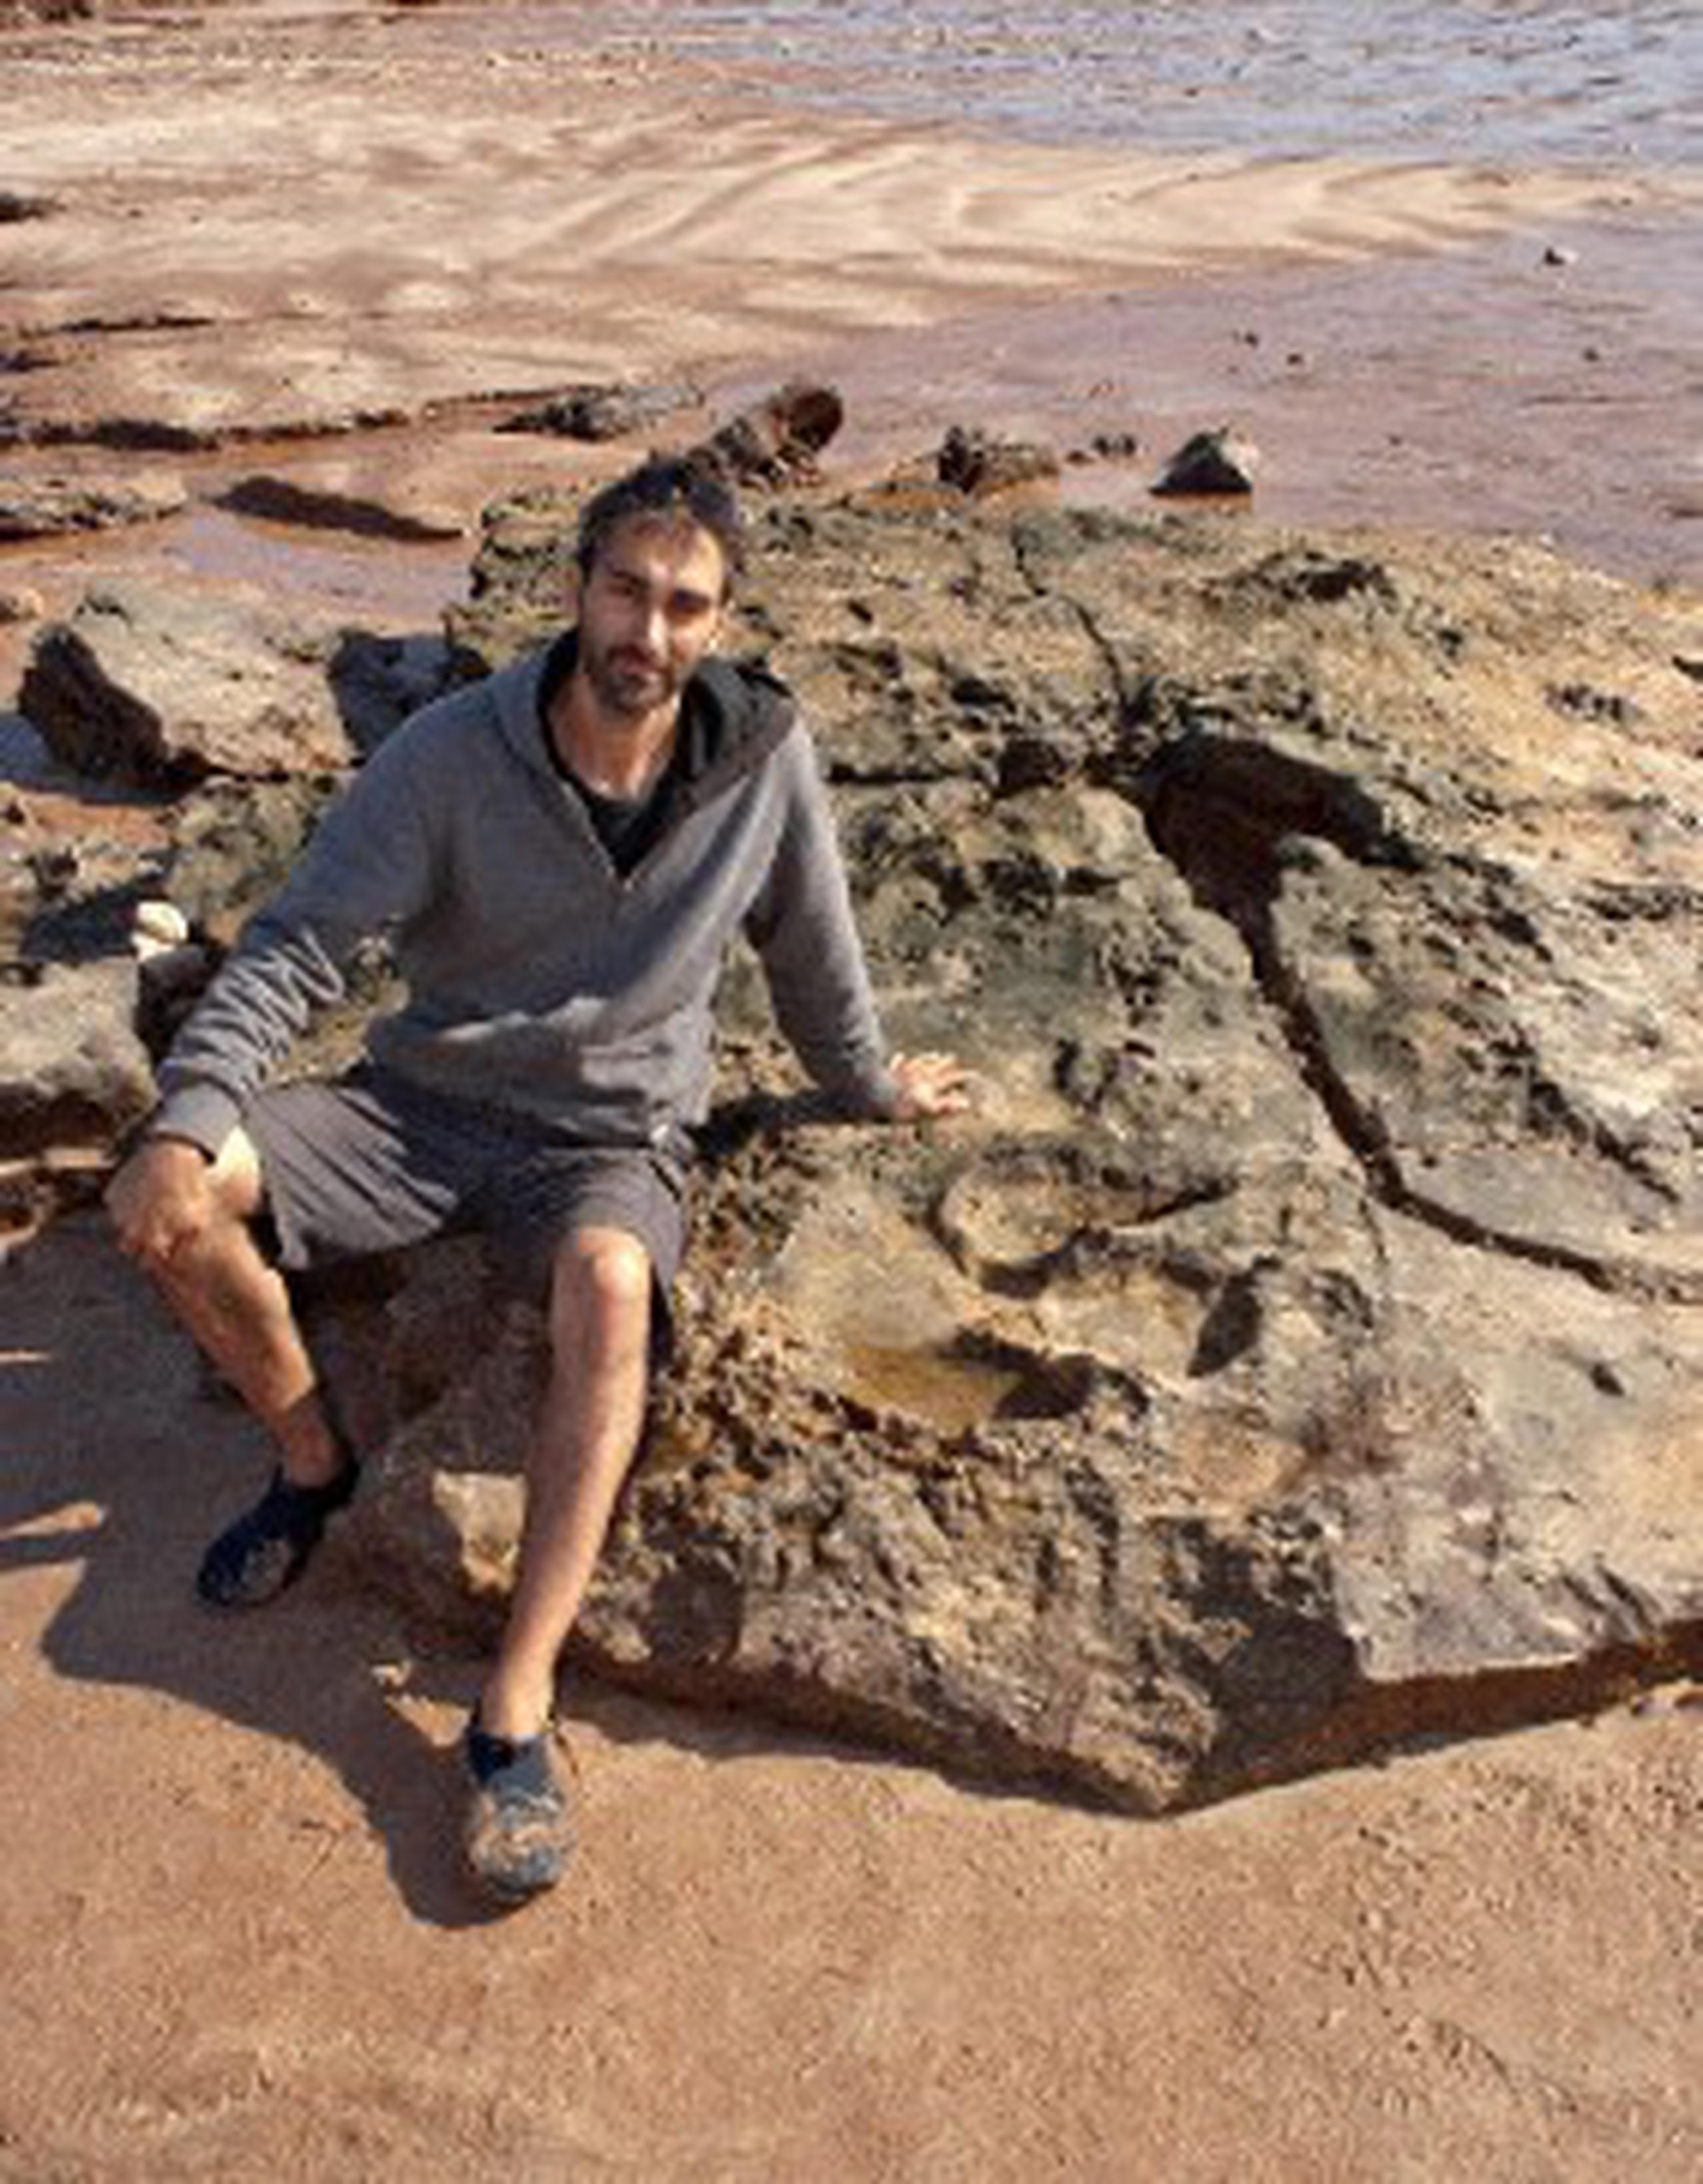 Las huellas de dinosaurios en Lark Quarry, famosas en Australia porque son miles y perduran desde hace 95 millones de años, podrían ser el rastro dejado en el lecho de un río cuando nadaban o lo cruzaban, una nueva tesis contraría a la teoría asumida de la estampida. (EFE)